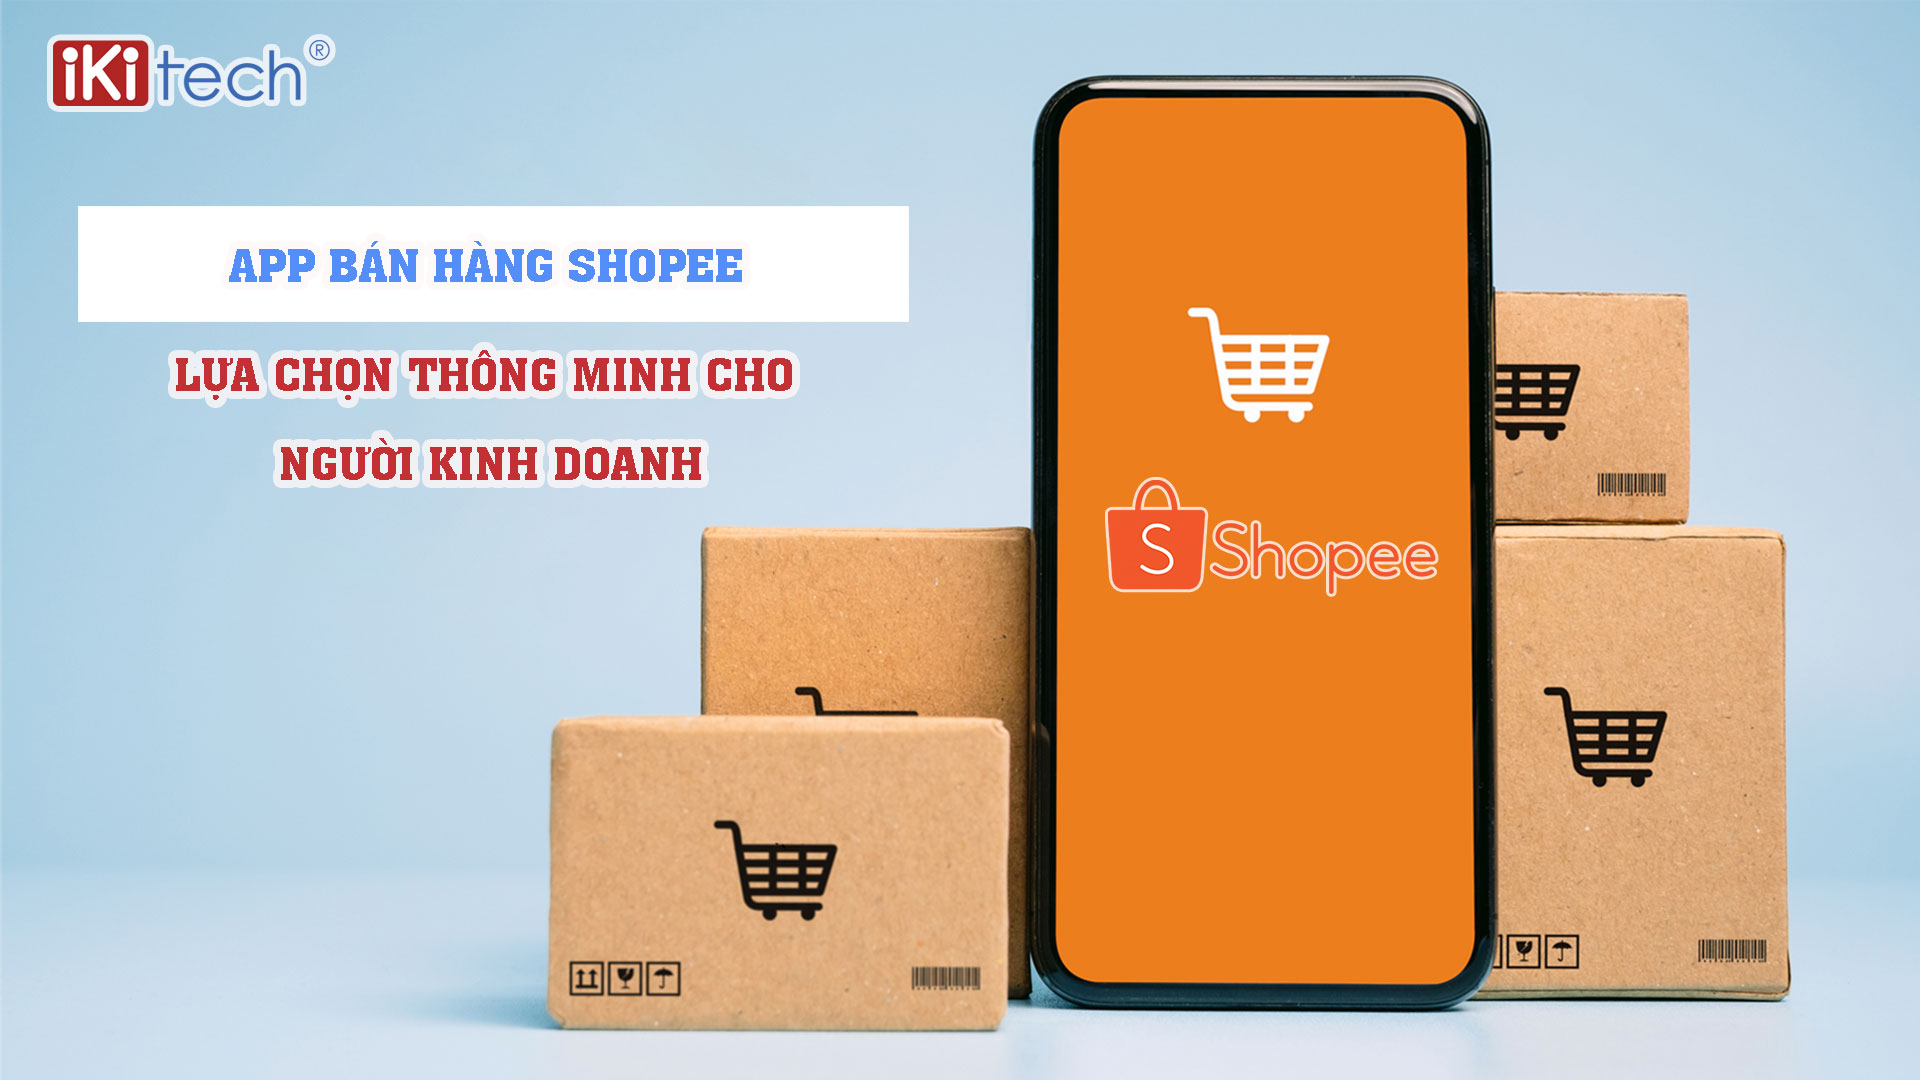 App bán hàng Shopee – Lựa chọn thông minh cho người kinh doanh